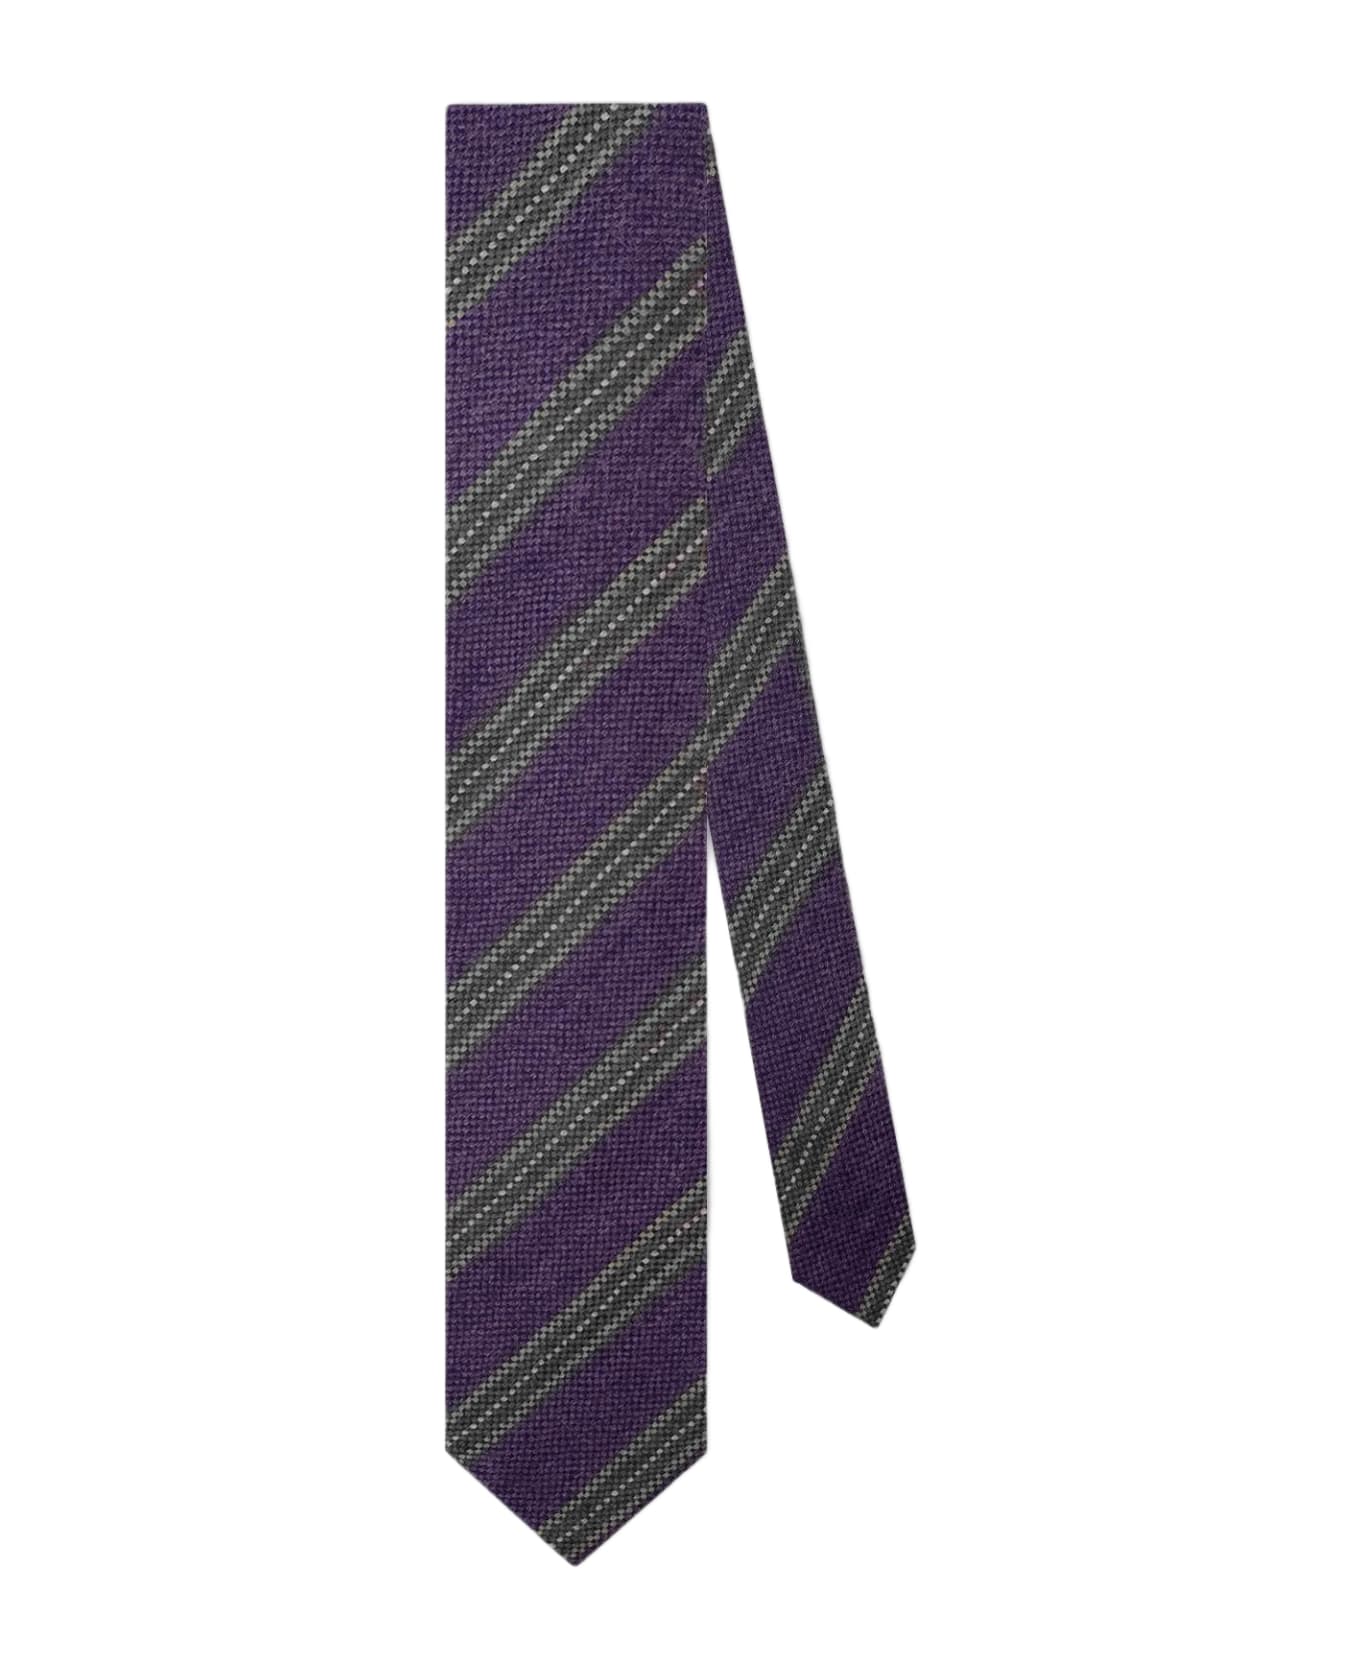 Larusmiani Tie 'porta Nuova' Tie - Purple